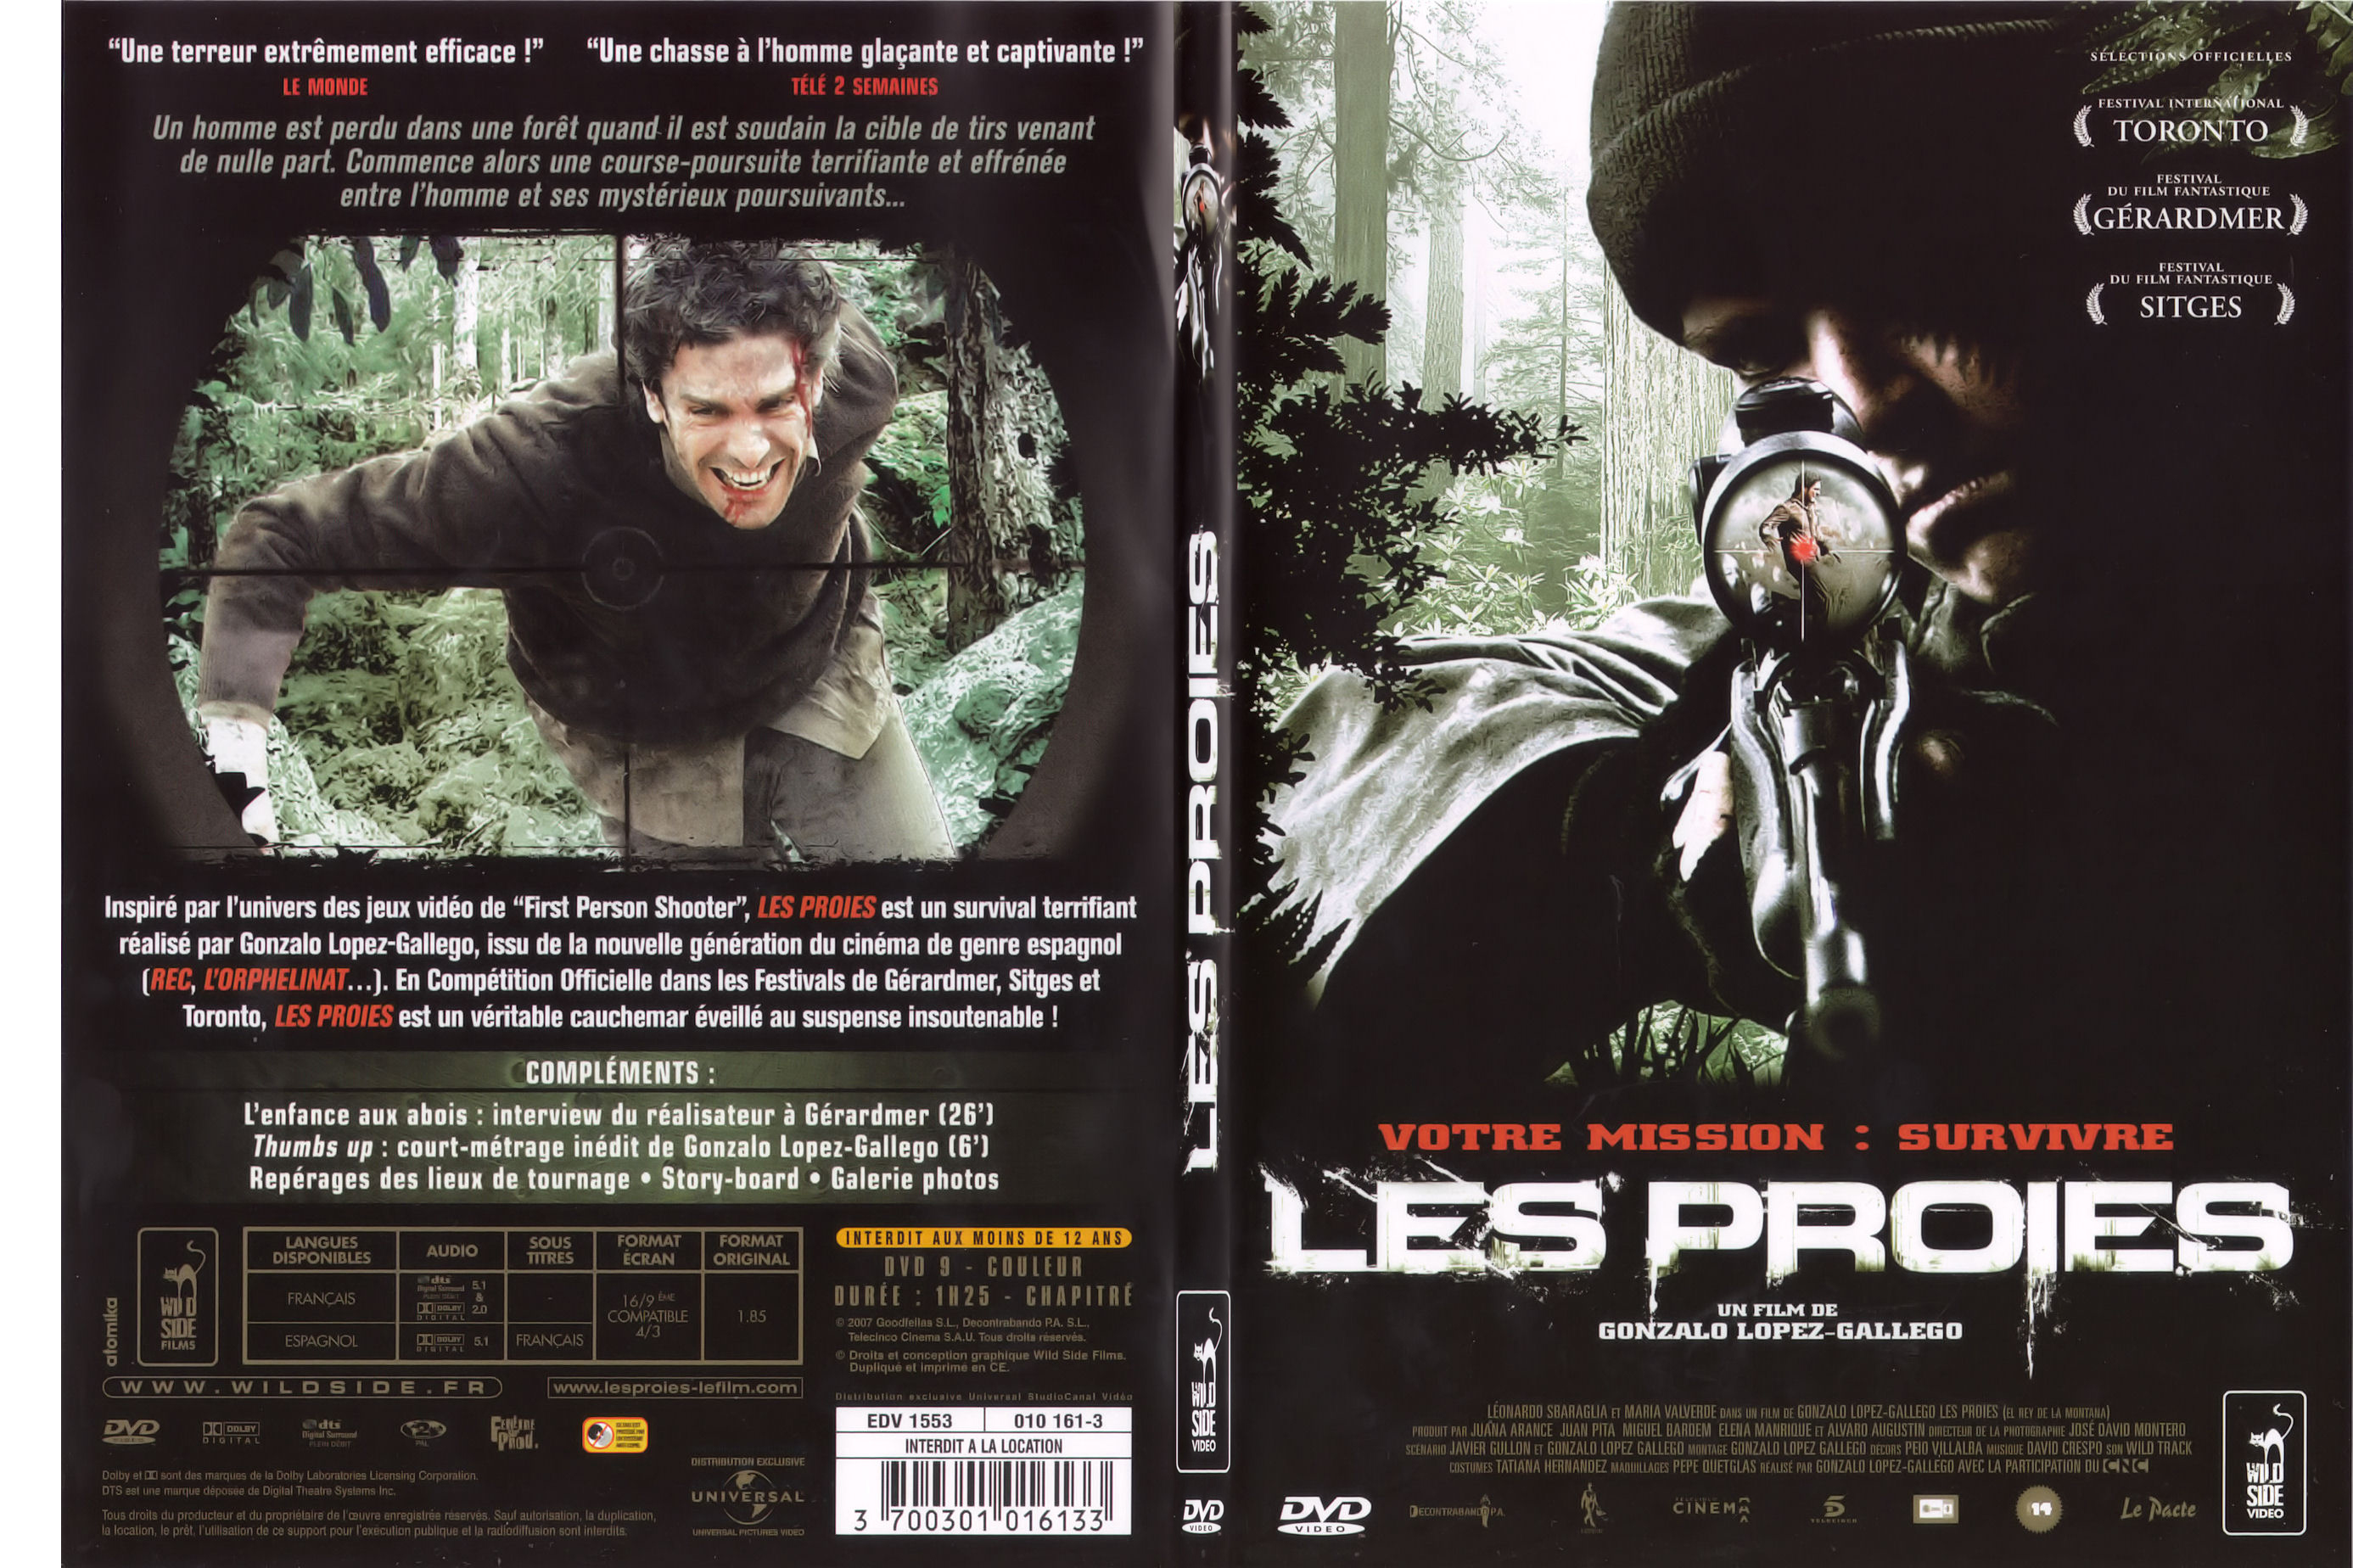 Jaquette DVD Les proies (2008) - SLIM